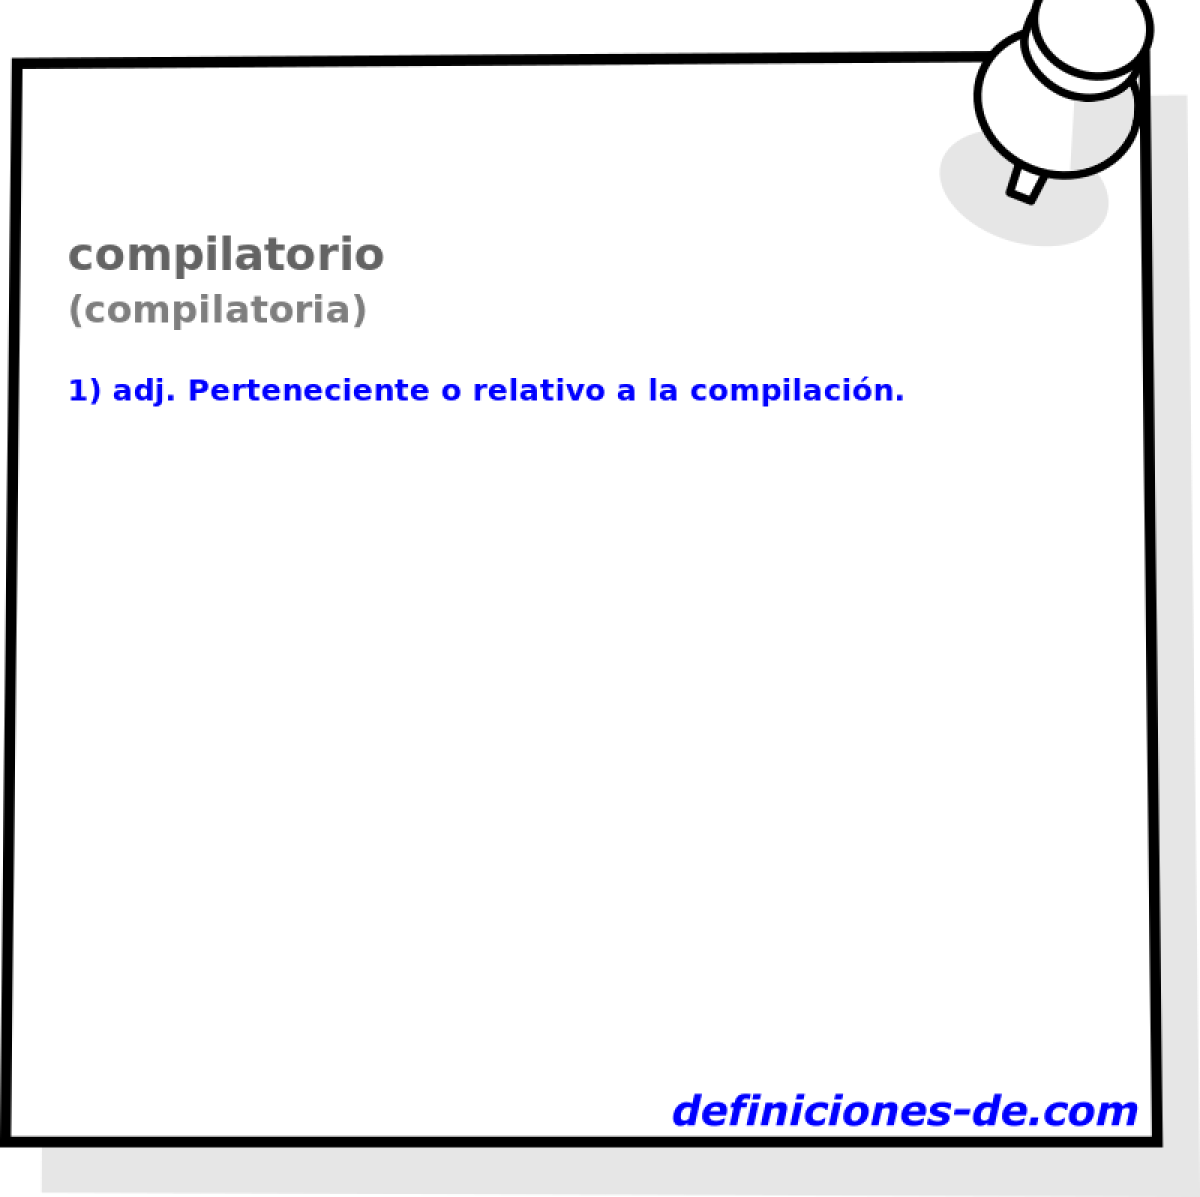 compilatorio (compilatoria)